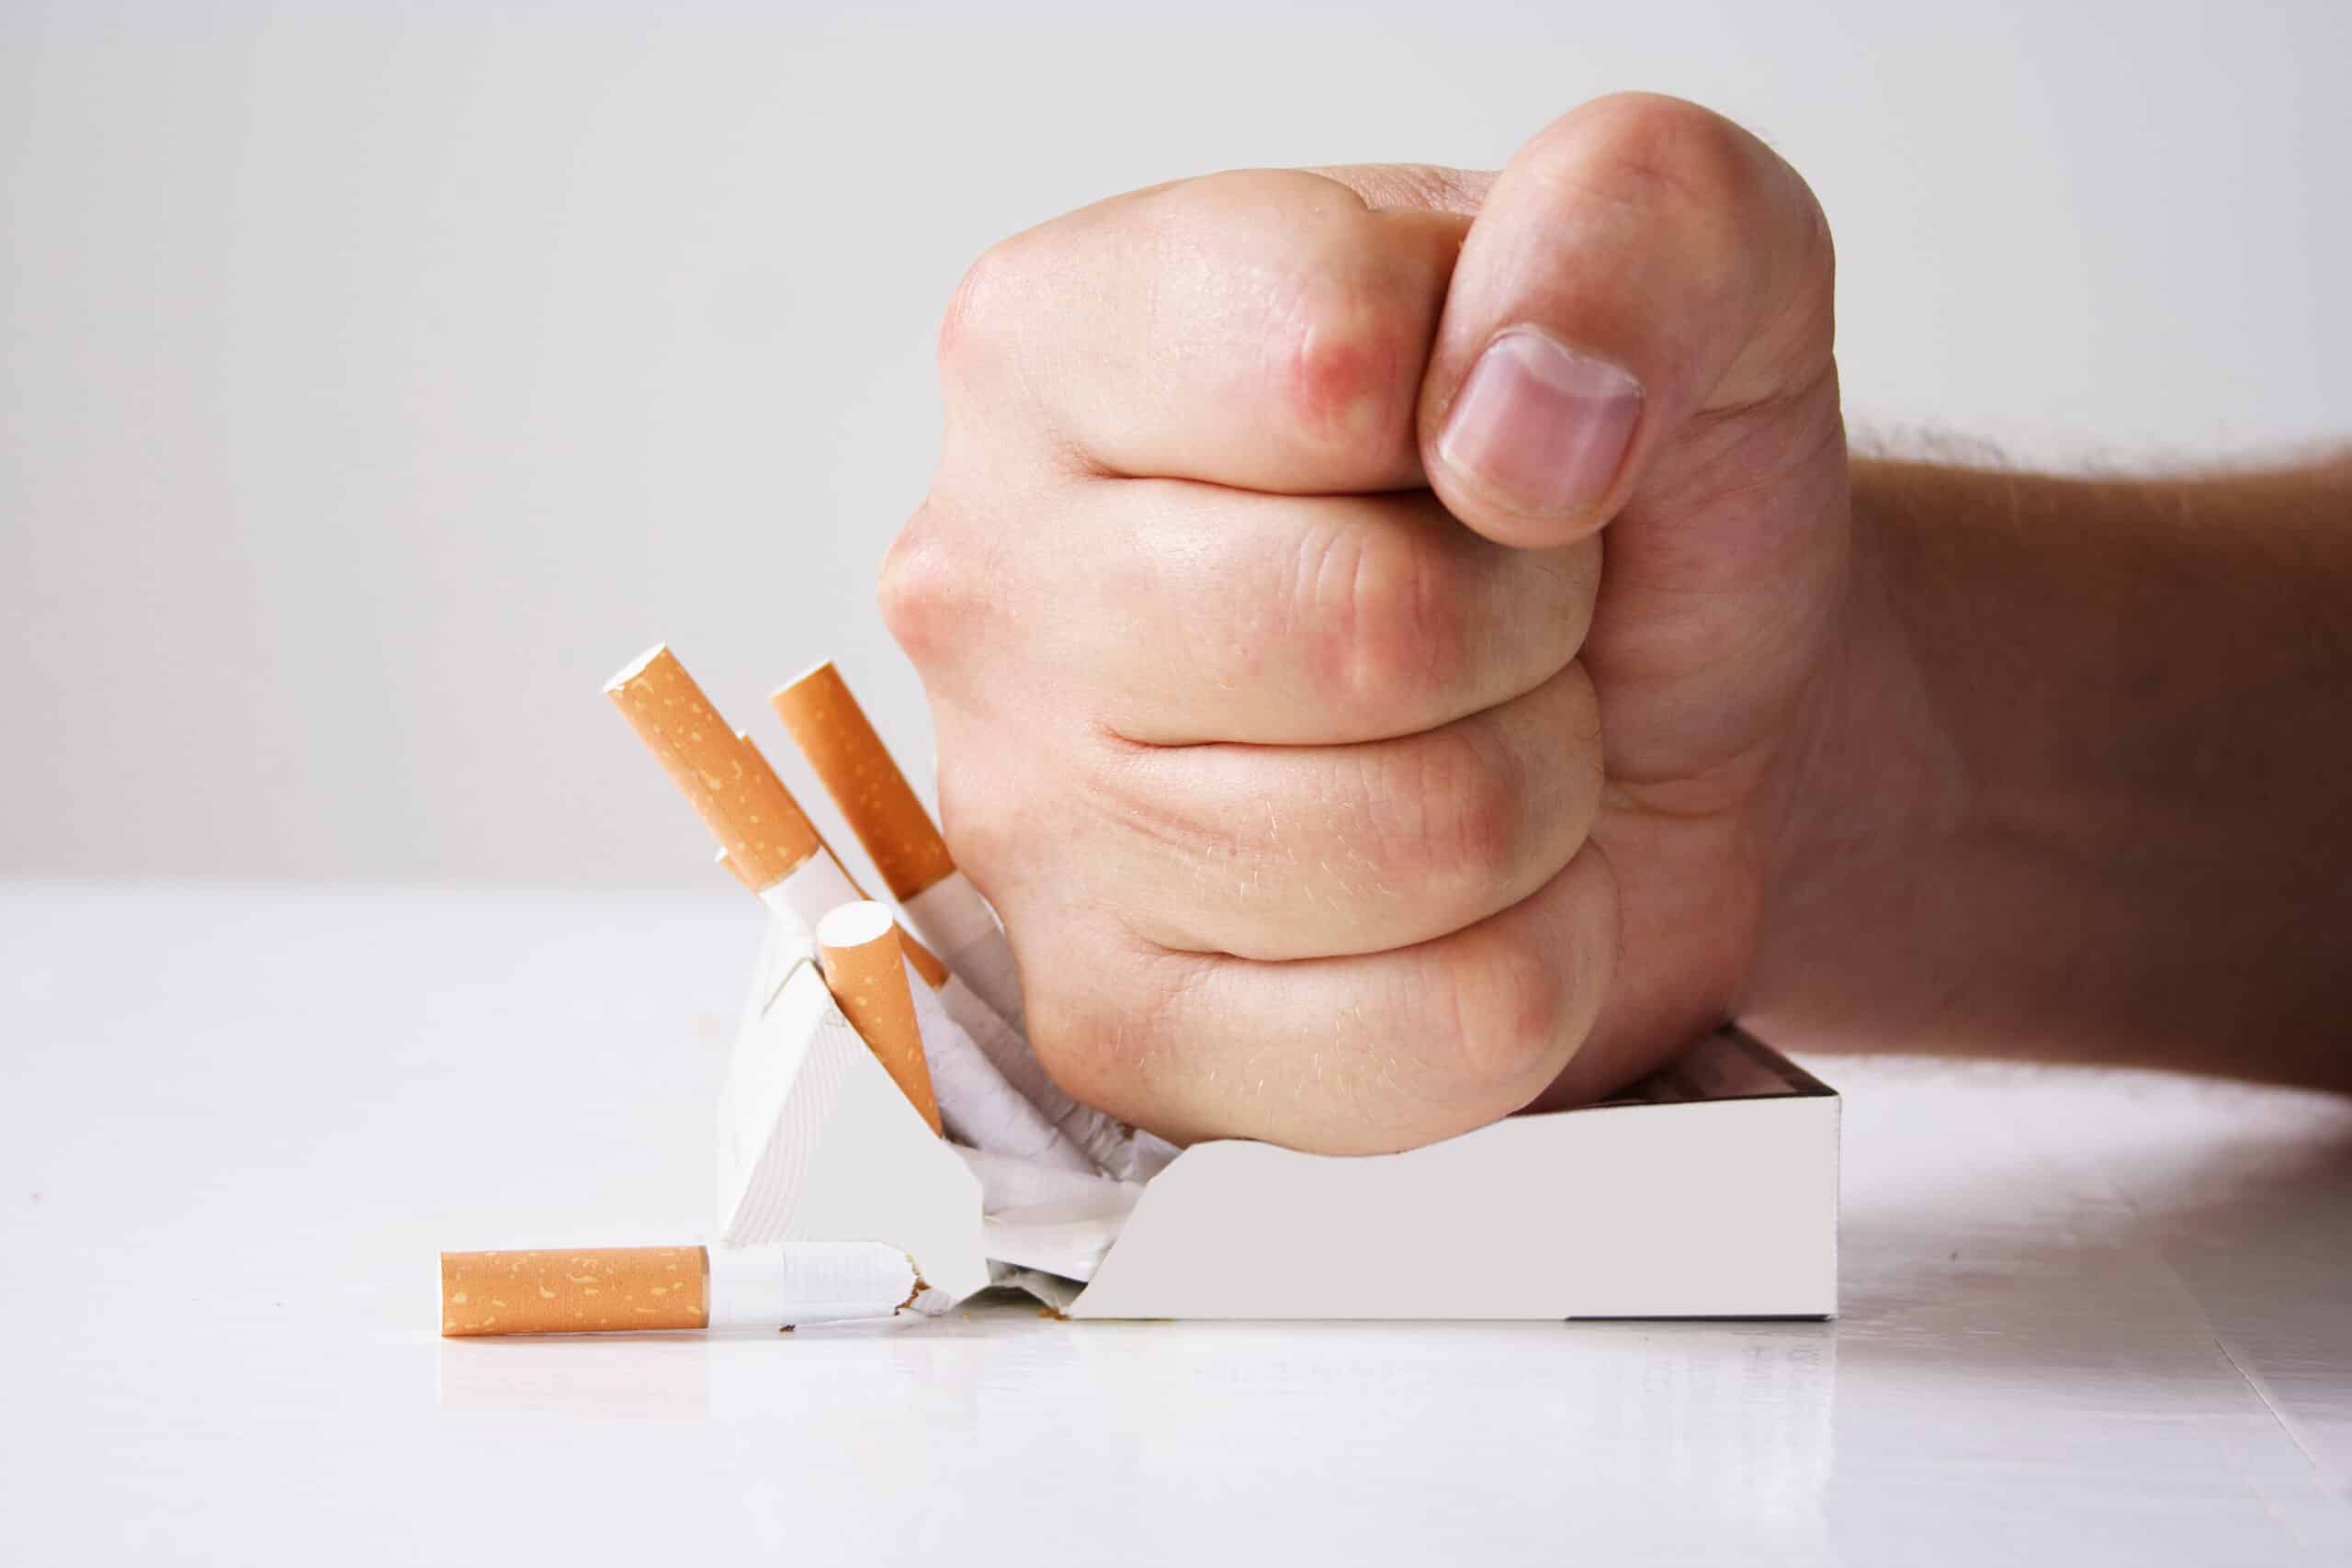 Comment encourager un collègue à arrêter de fumer